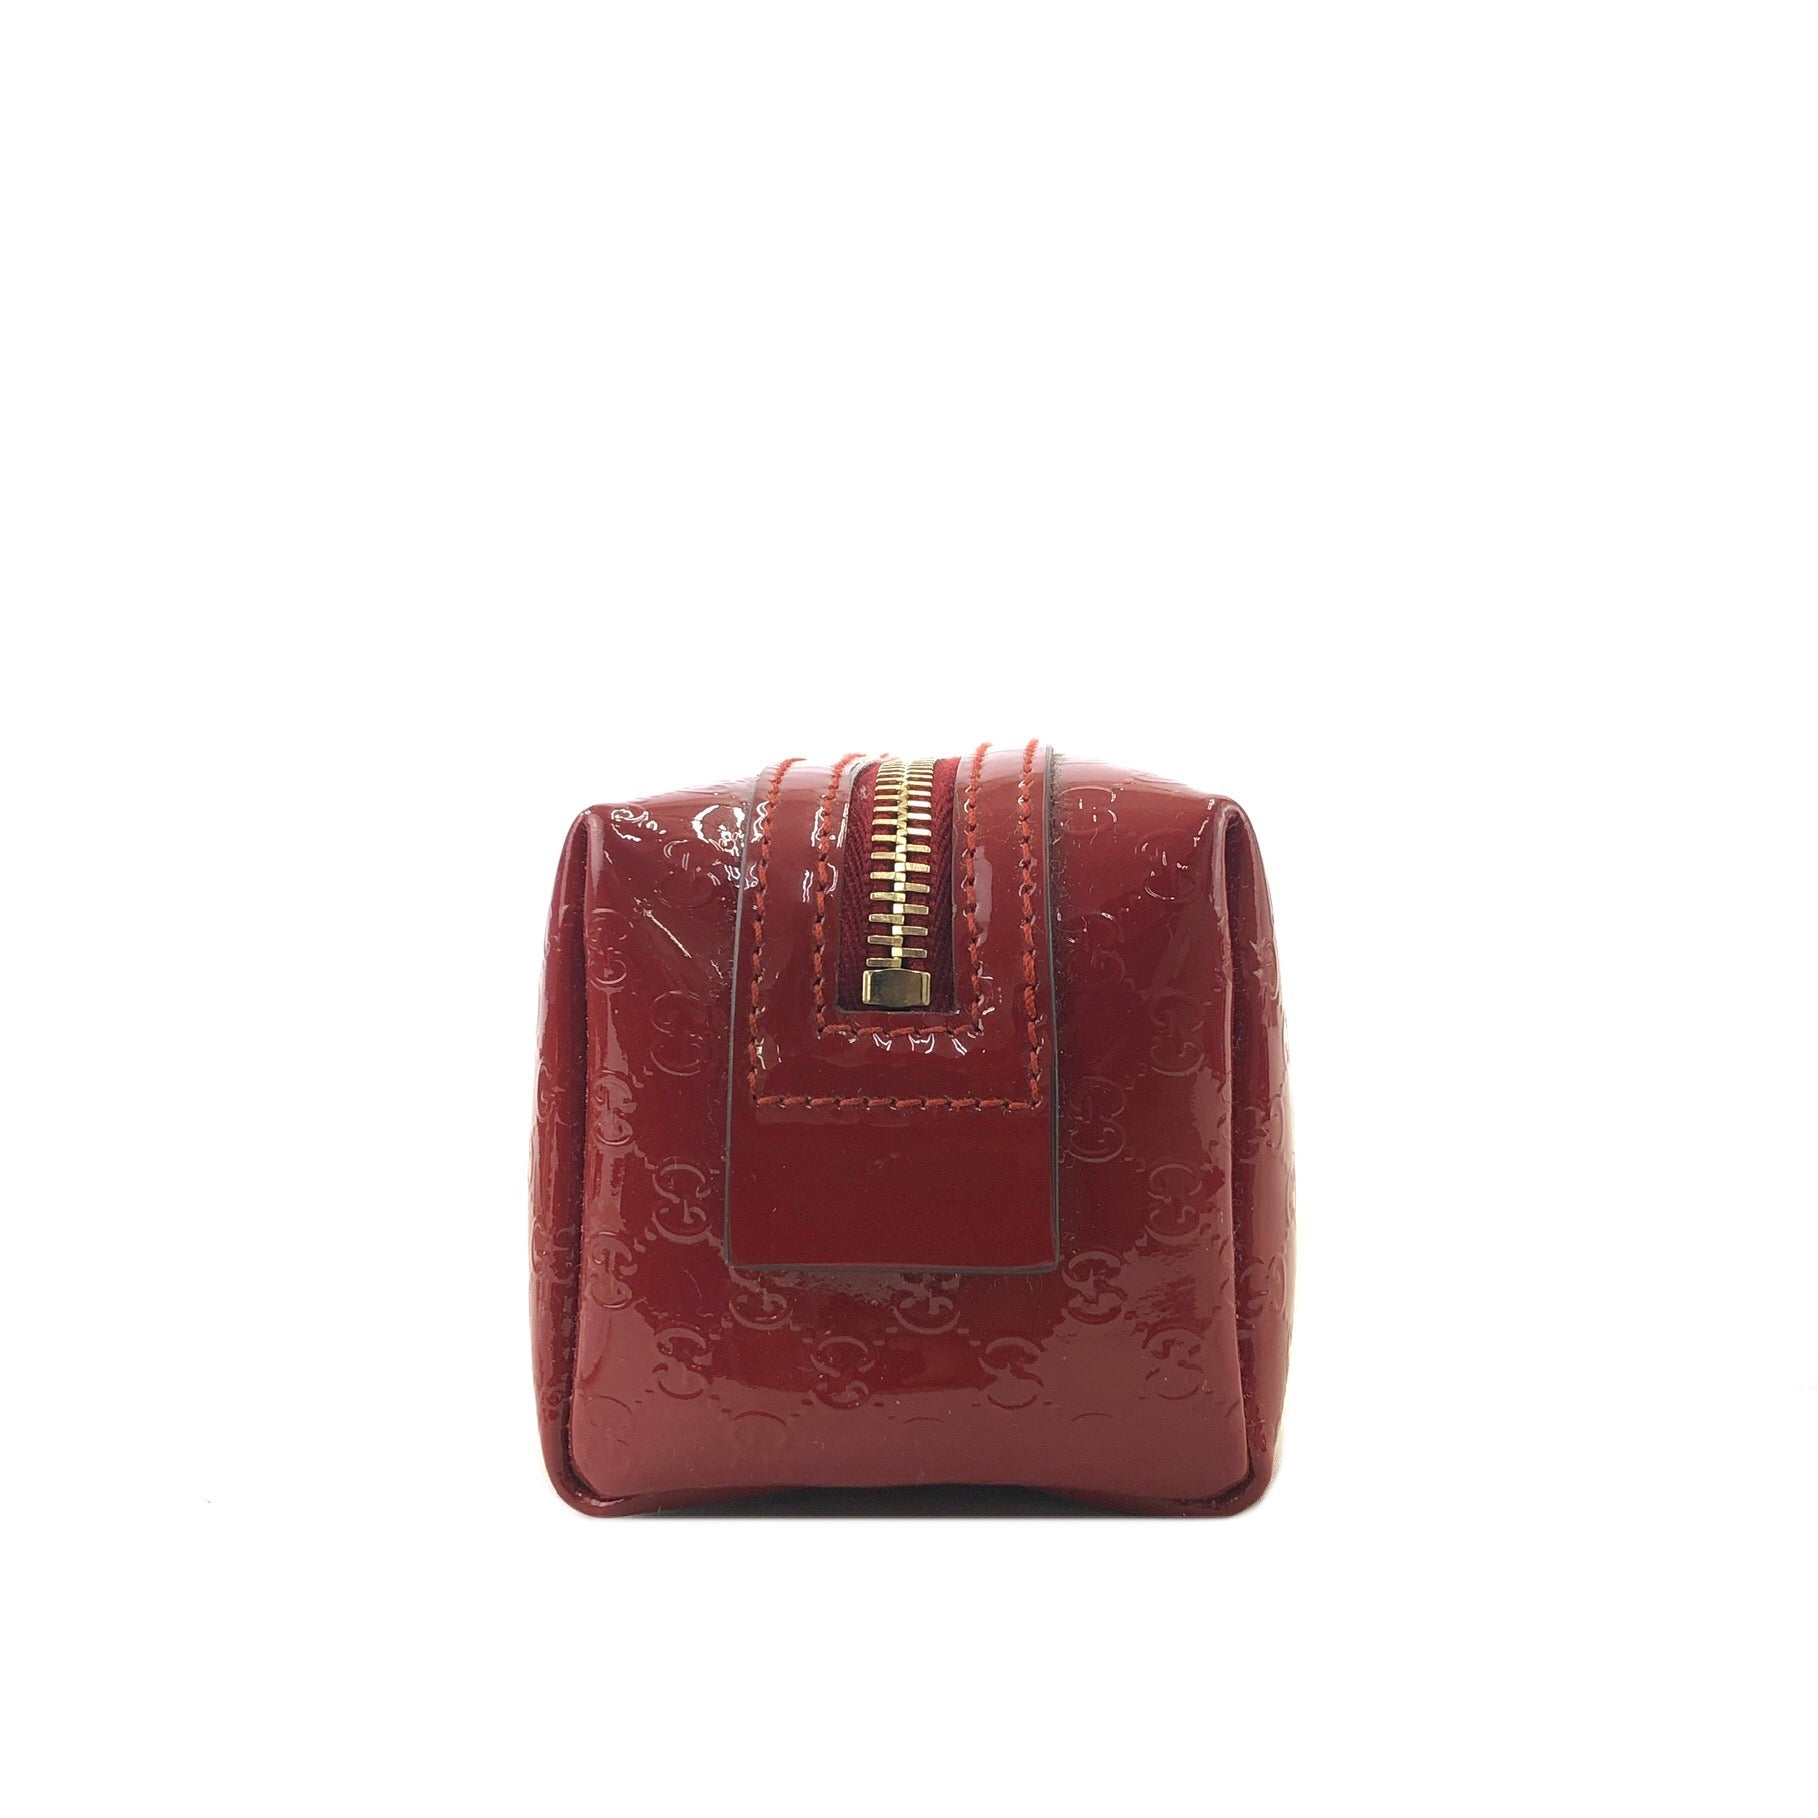 Gucci Red Microguccissima Patent Leather Heart Coin Purse - Gucci